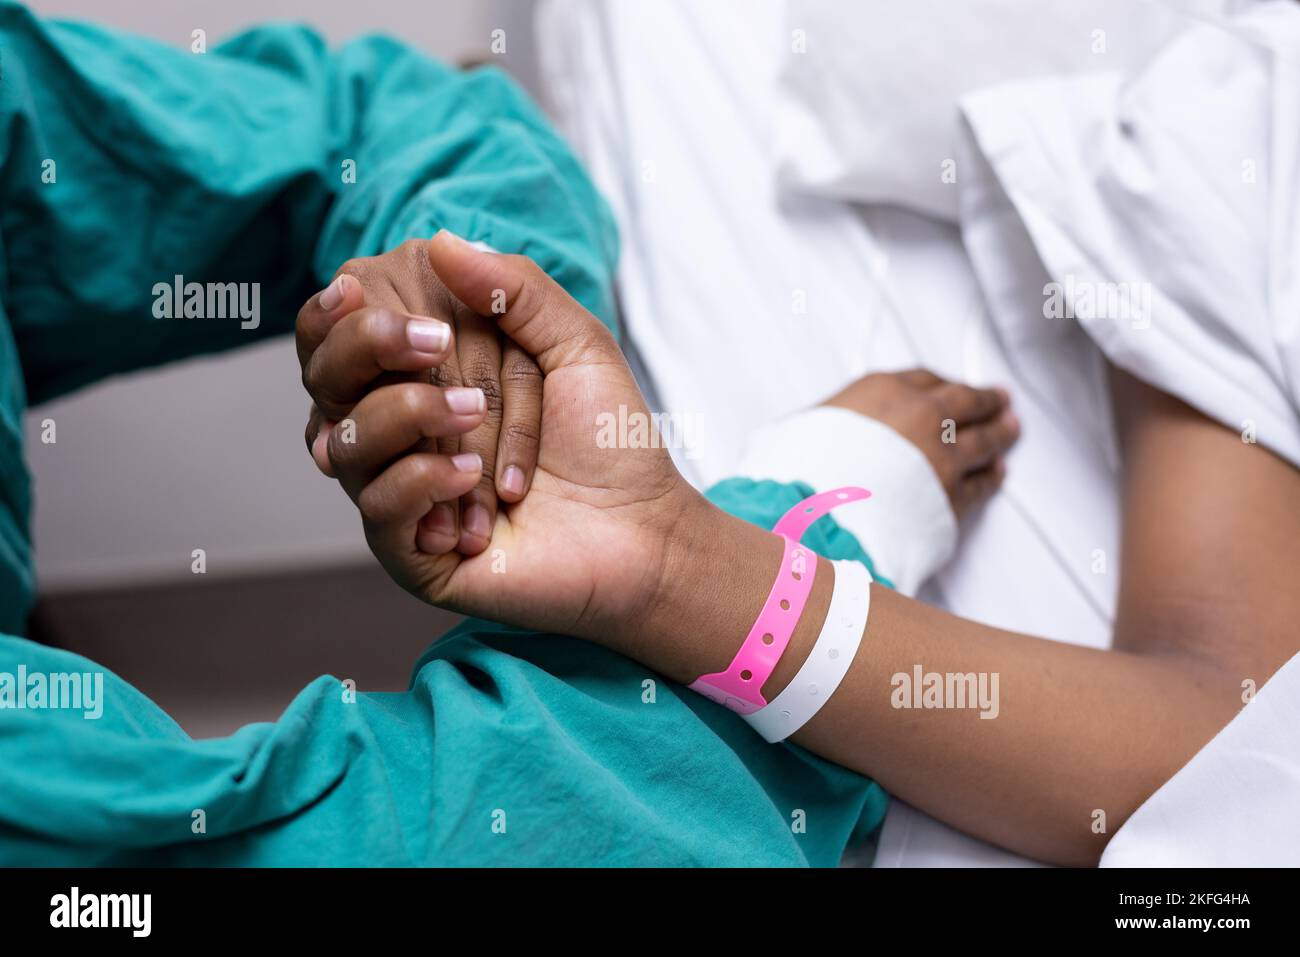 Immagine di un medico che tiene una mano del paziente. Foto Stock